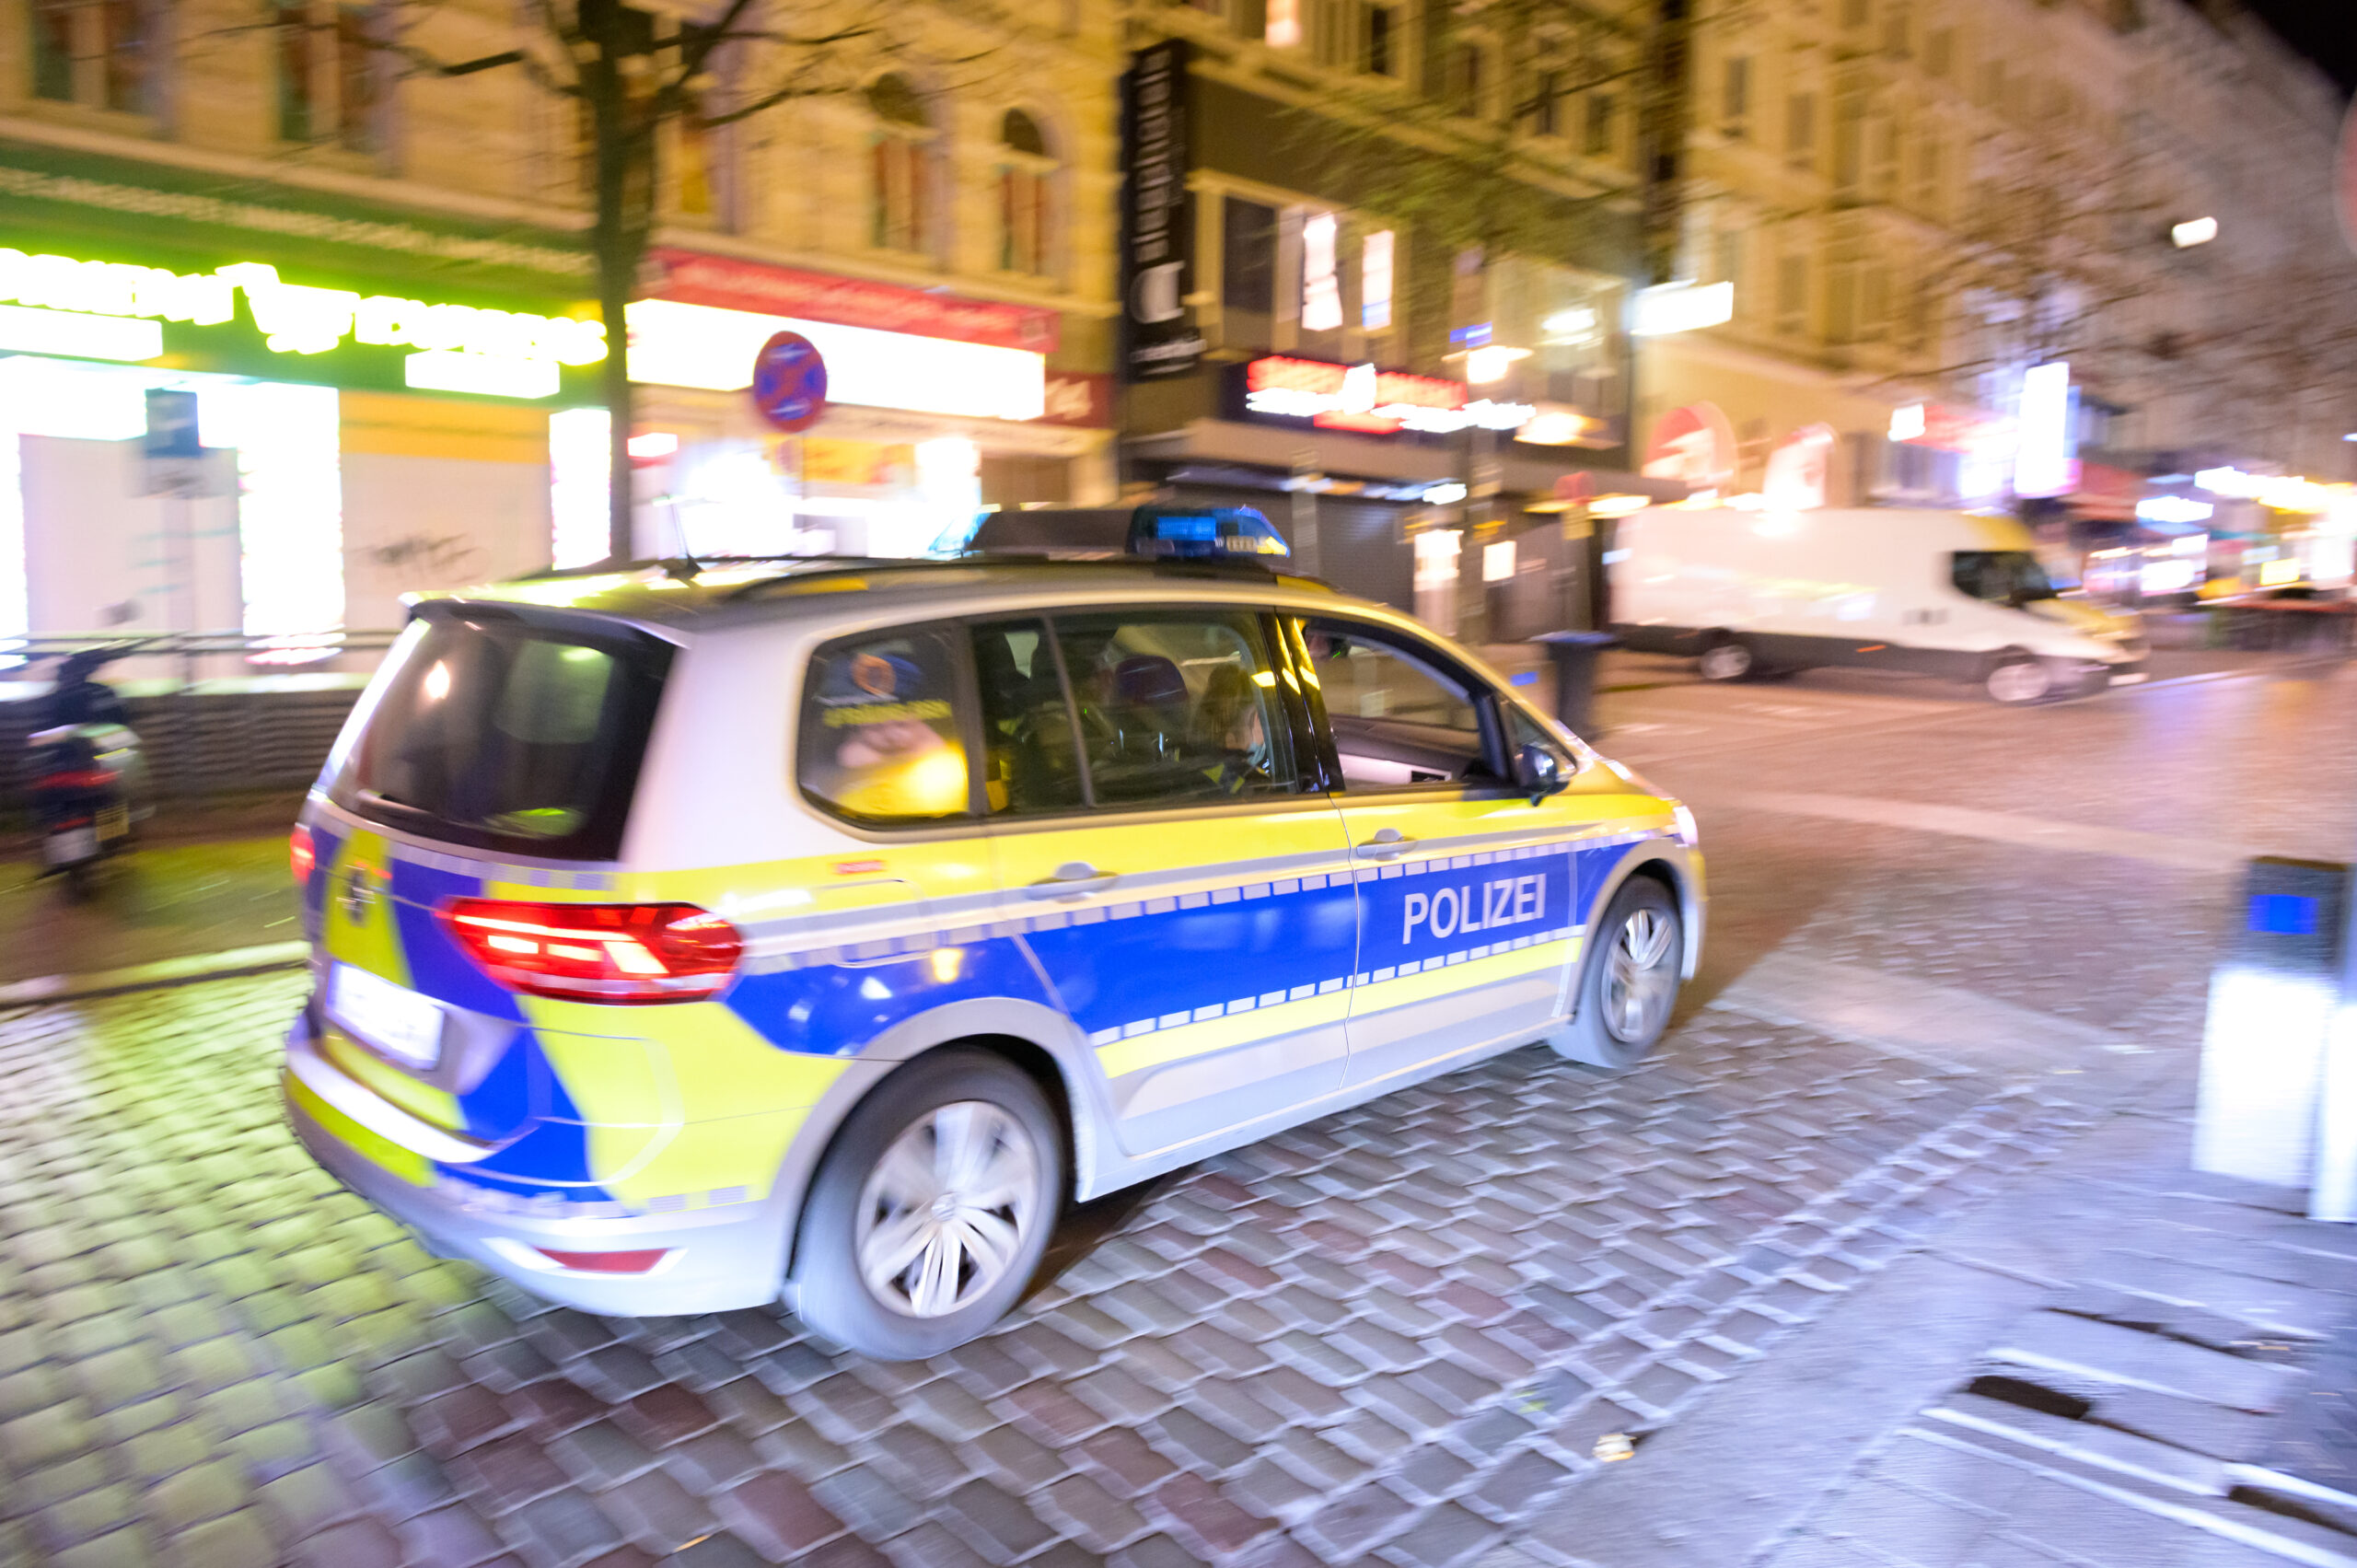 Streit bei Burger King in Hamburg - Mitarbeiter und Kunde mit Messer verletzt